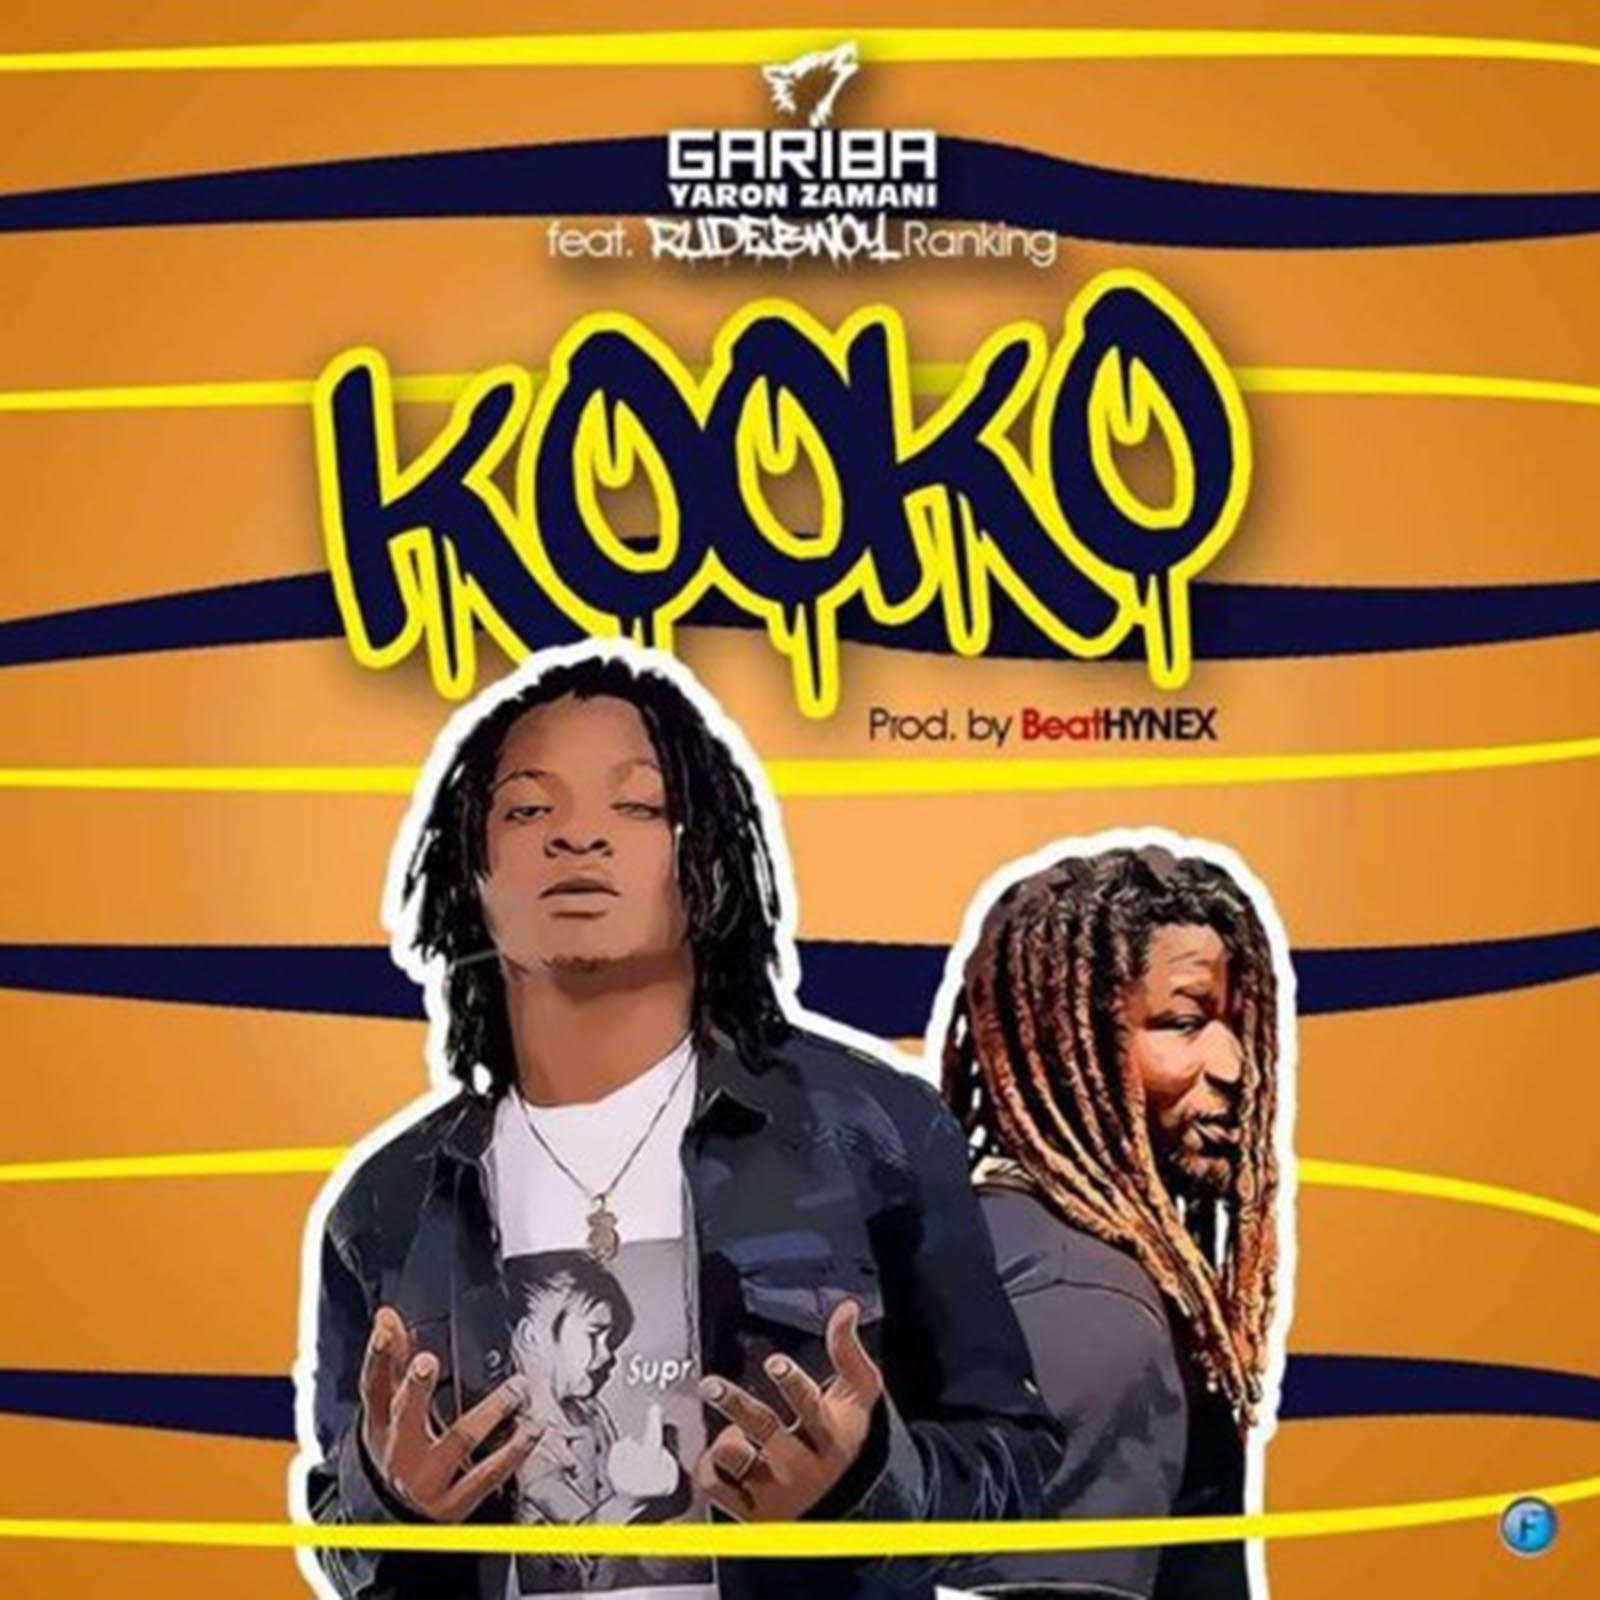 KooKo by Gariba feat. Rudebwoy Ranking